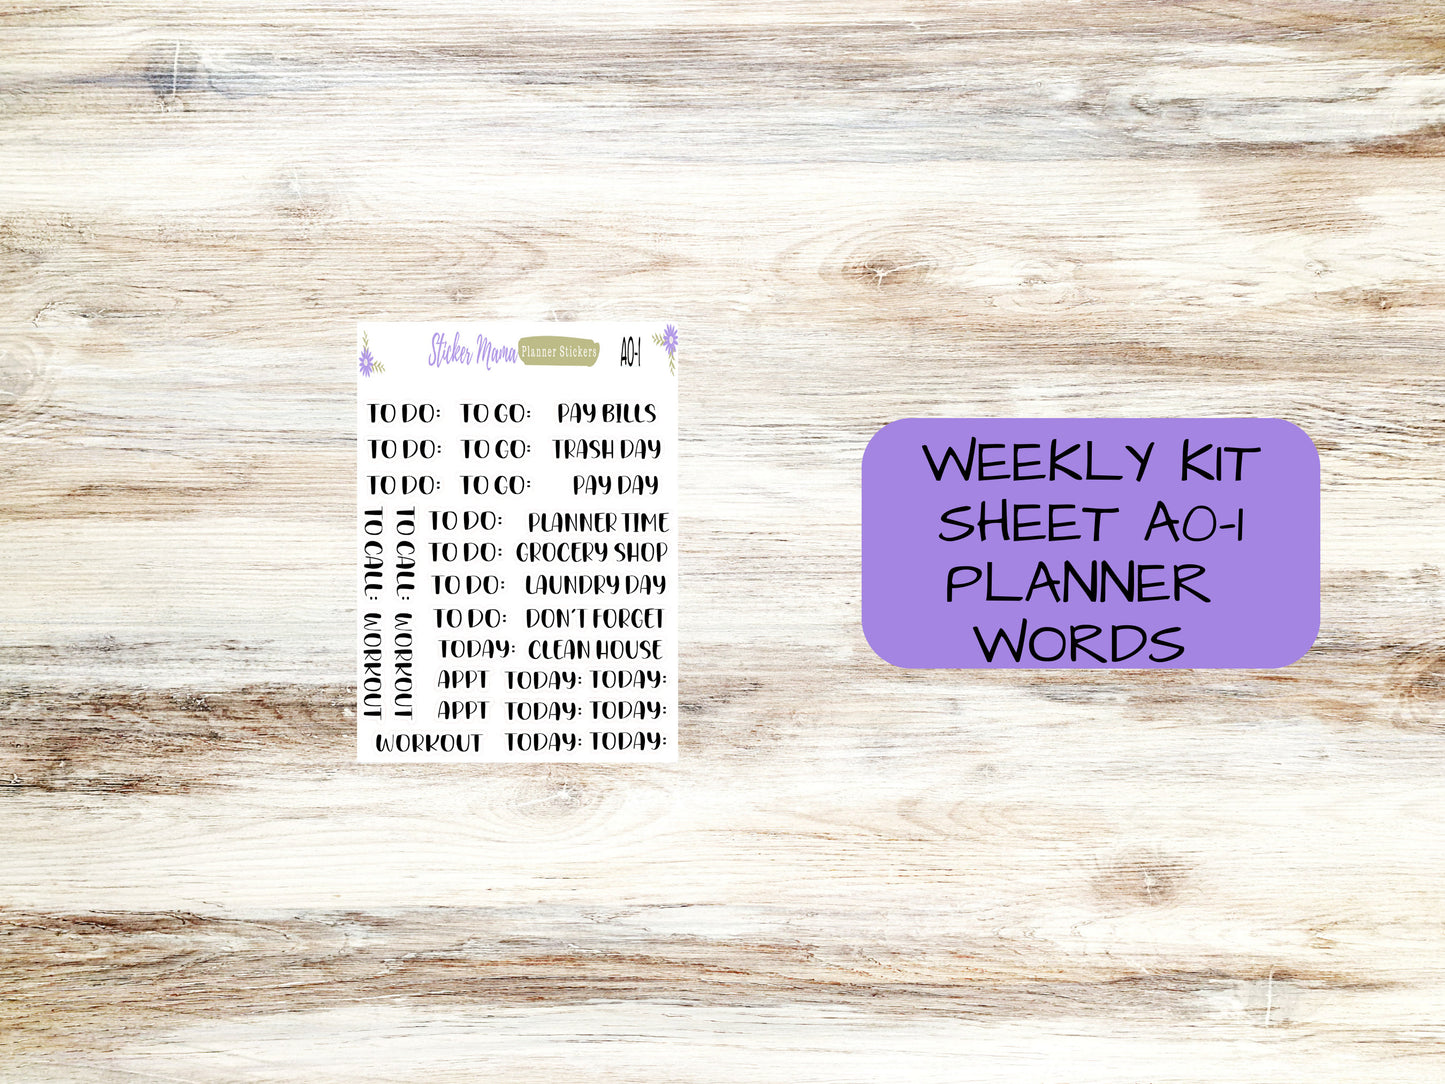 WK-3105 - Hello, Love!  || Weekly Planner Kit || Erin Condren || Hourly Planner Kit || Vertical Planner Kit